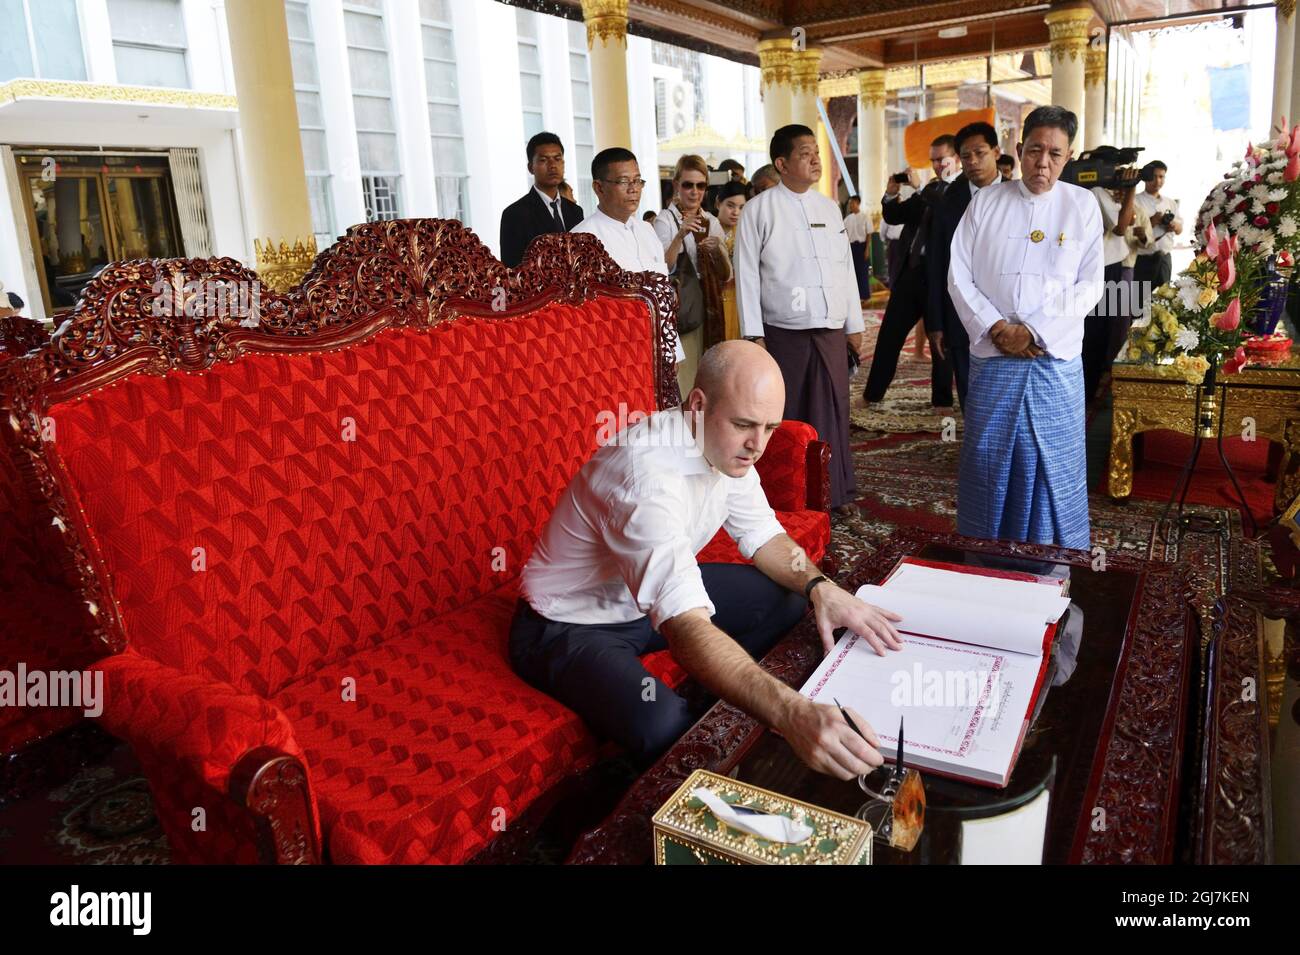 RANGÚN 20121113 El Primer Ministro sueco Fredrik Reinfeldt es visto durante su visita a la Pagoda Shwedagon en Rangún, Birmania, el 13 de noviembre de 2012. EL P.M sueco está en una visita oficial a Birmania. Foto: Henrik Montgomery / SCANPIX Kod: 10060 Foto de stock